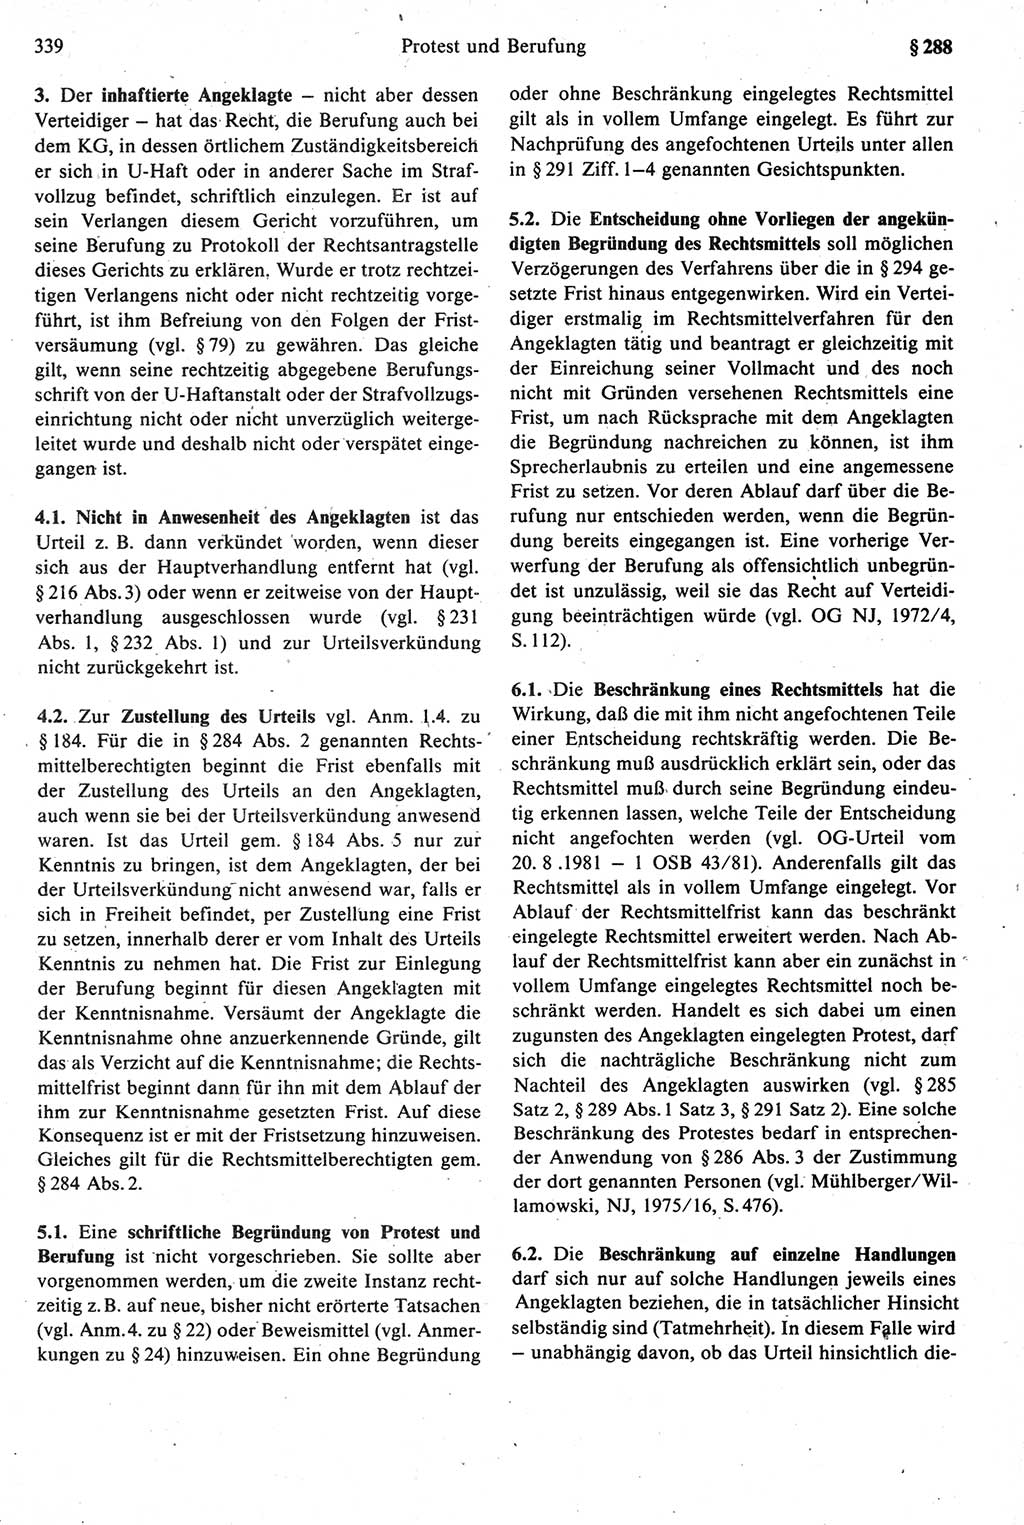 Strafprozeßrecht der DDR [Deutsche Demokratische Republik], Kommentar zur Strafprozeßordnung (StPO) 1987, Seite 339 (Strafprozeßr. DDR Komm. StPO 1987, S. 339)